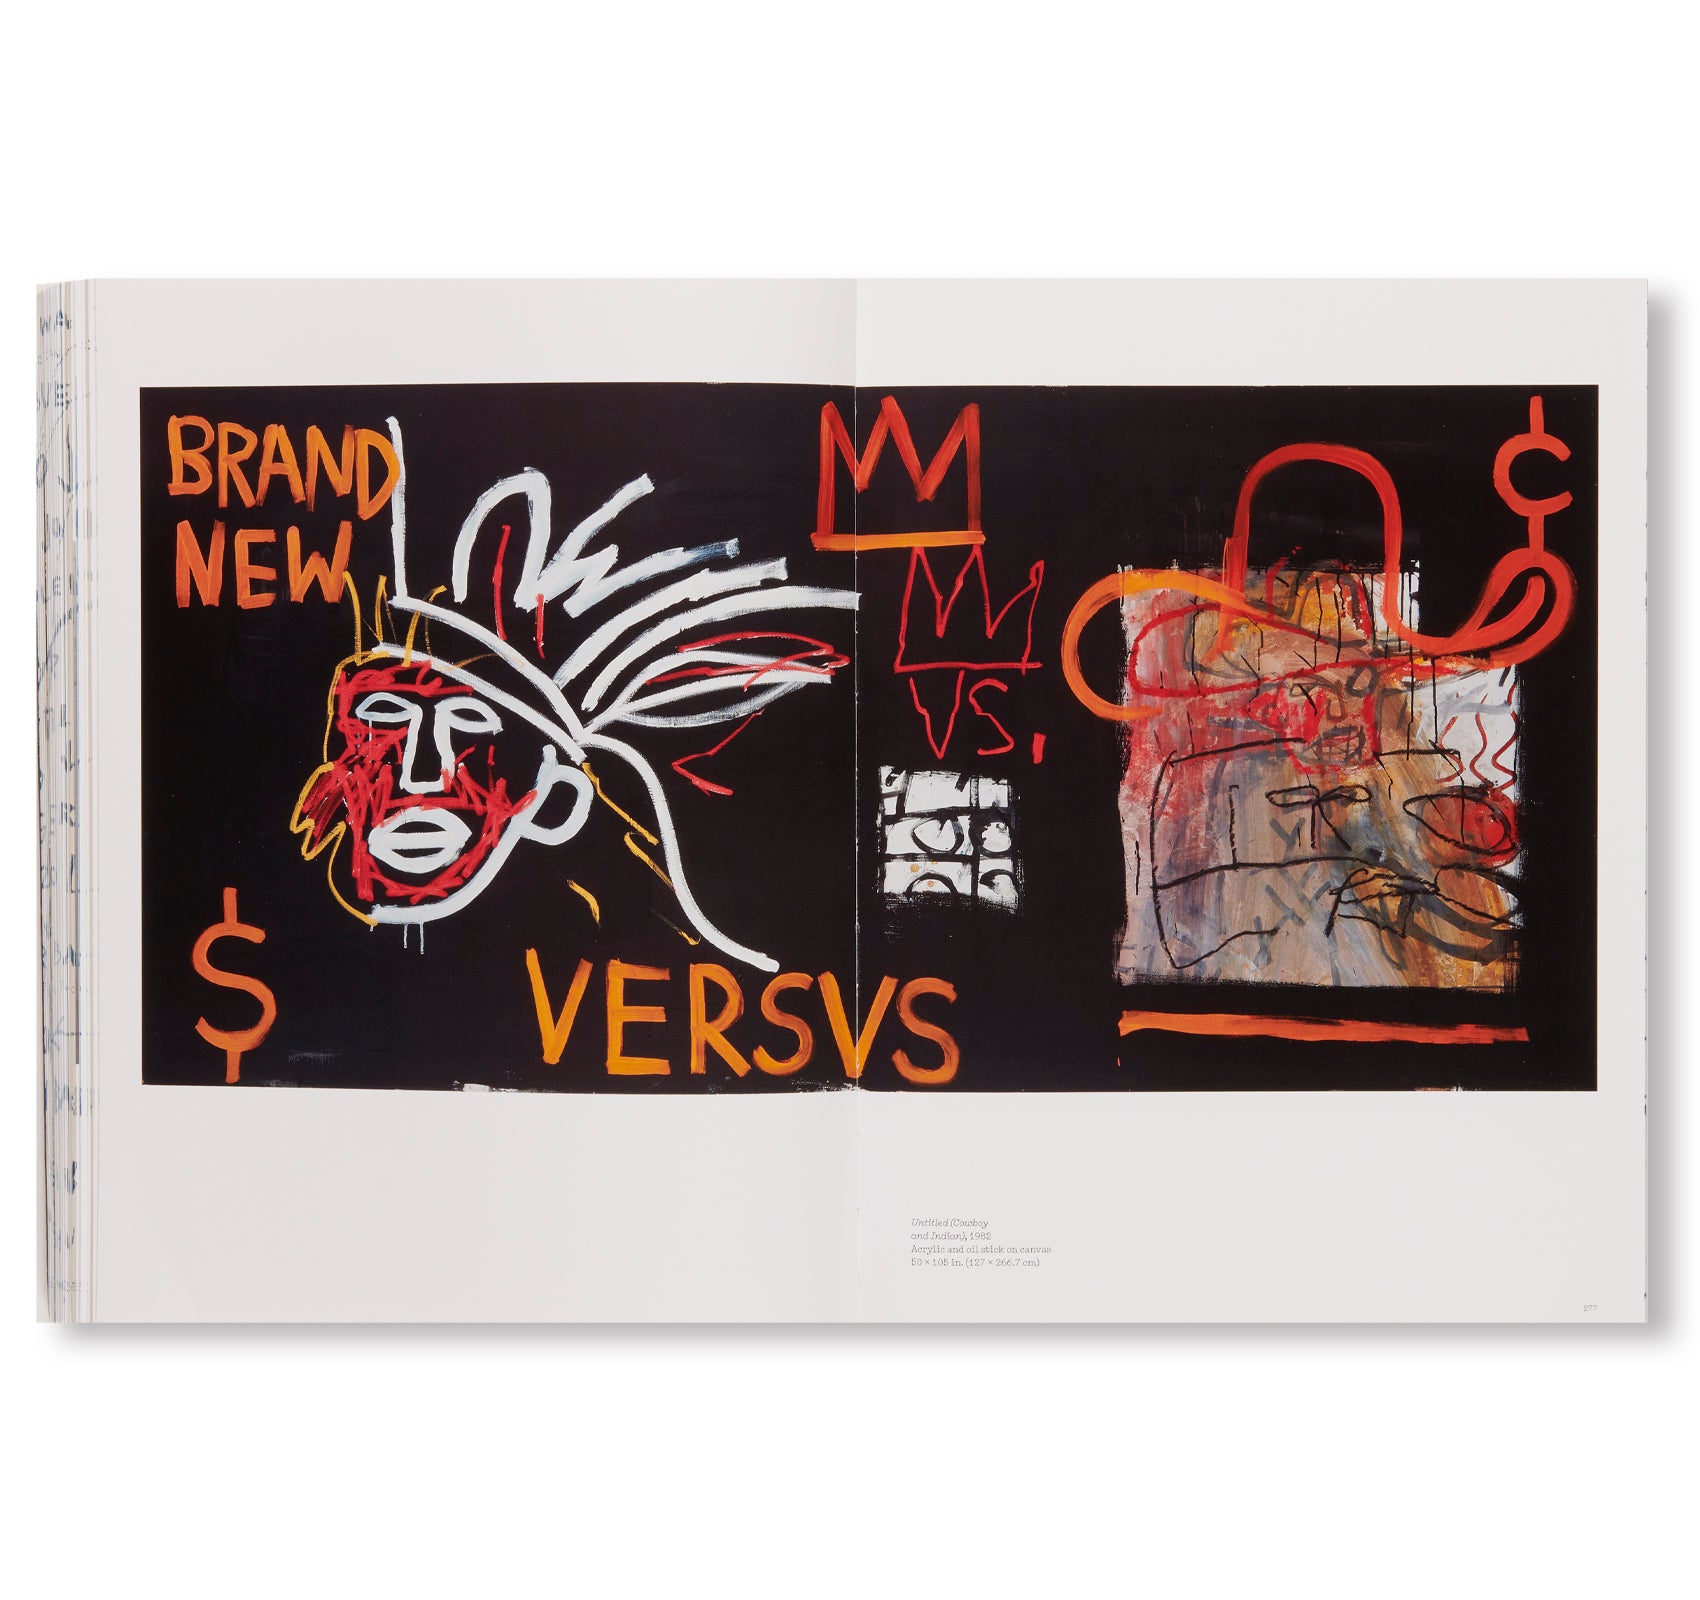 KING PLEASURE© by Jean-Michel Basquiat